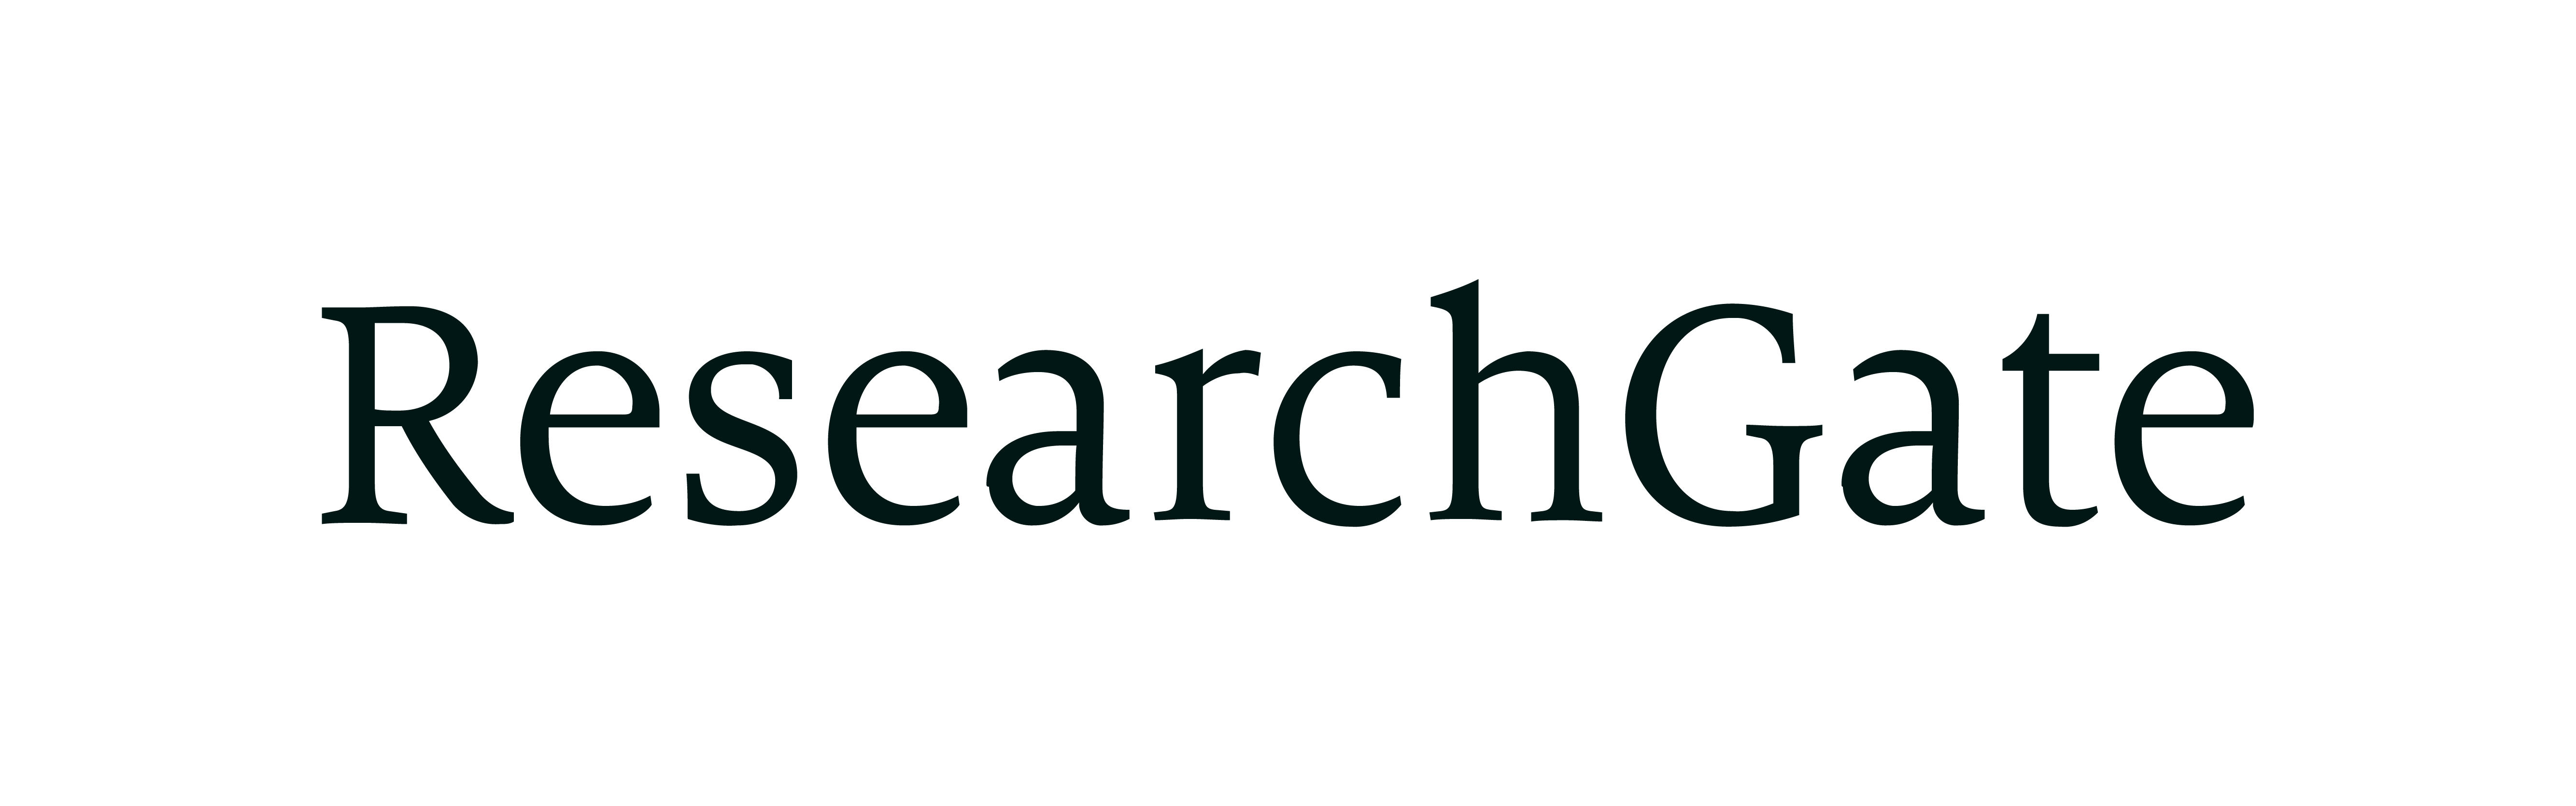 ResearchGate_Logo.02_Black.White.png